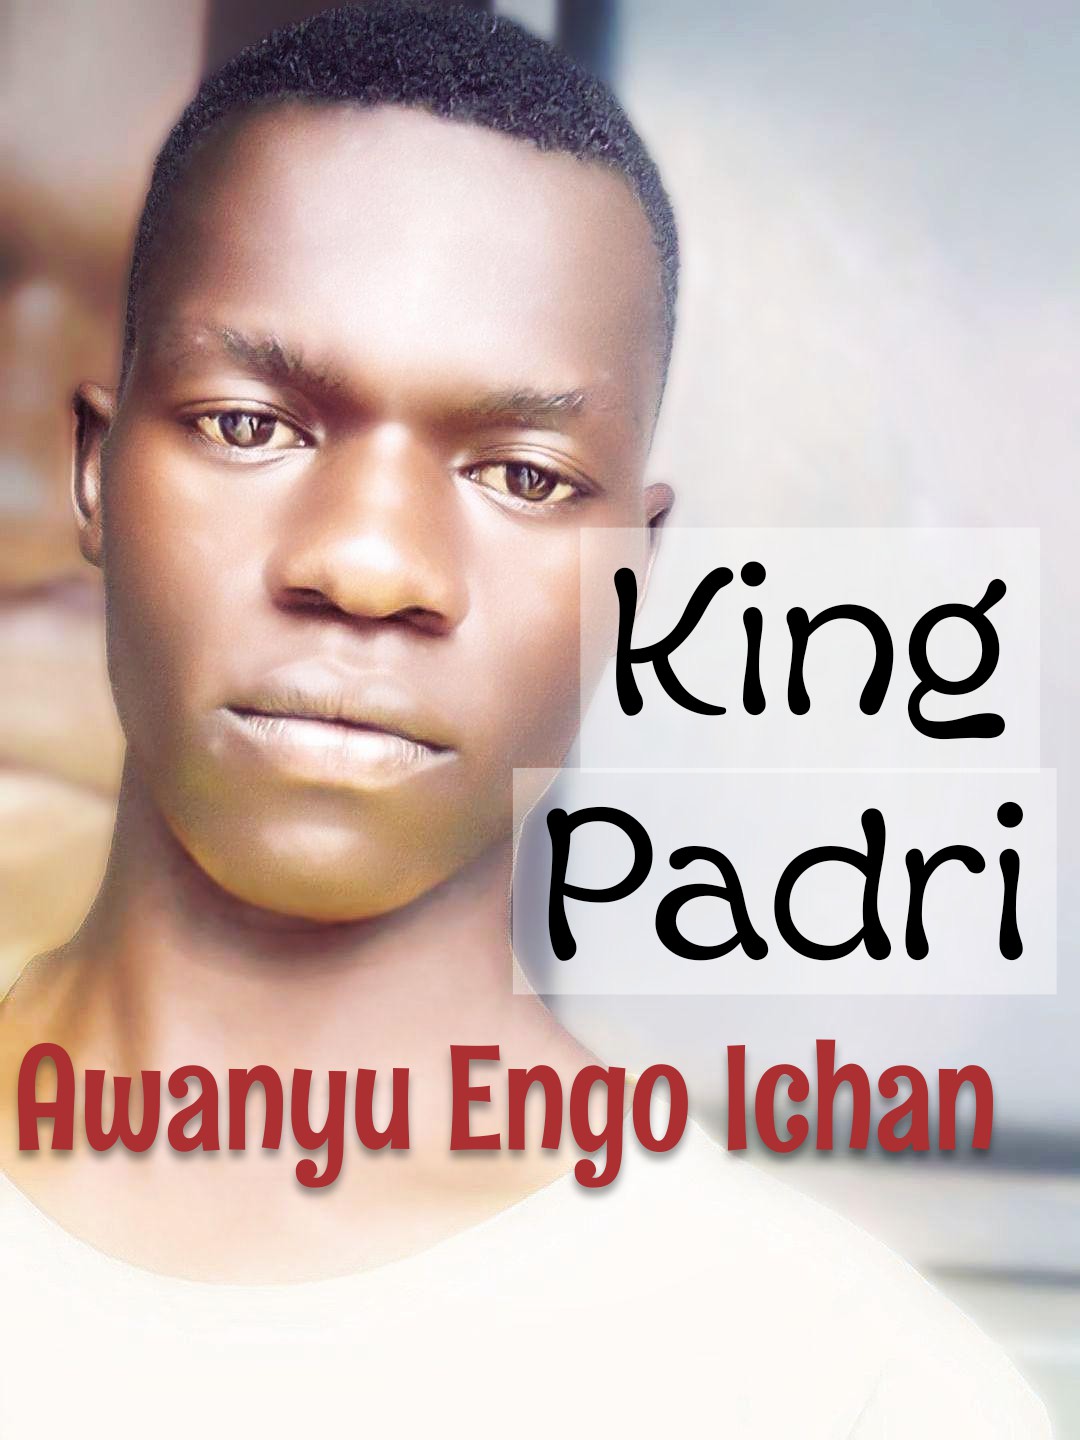 King Padri